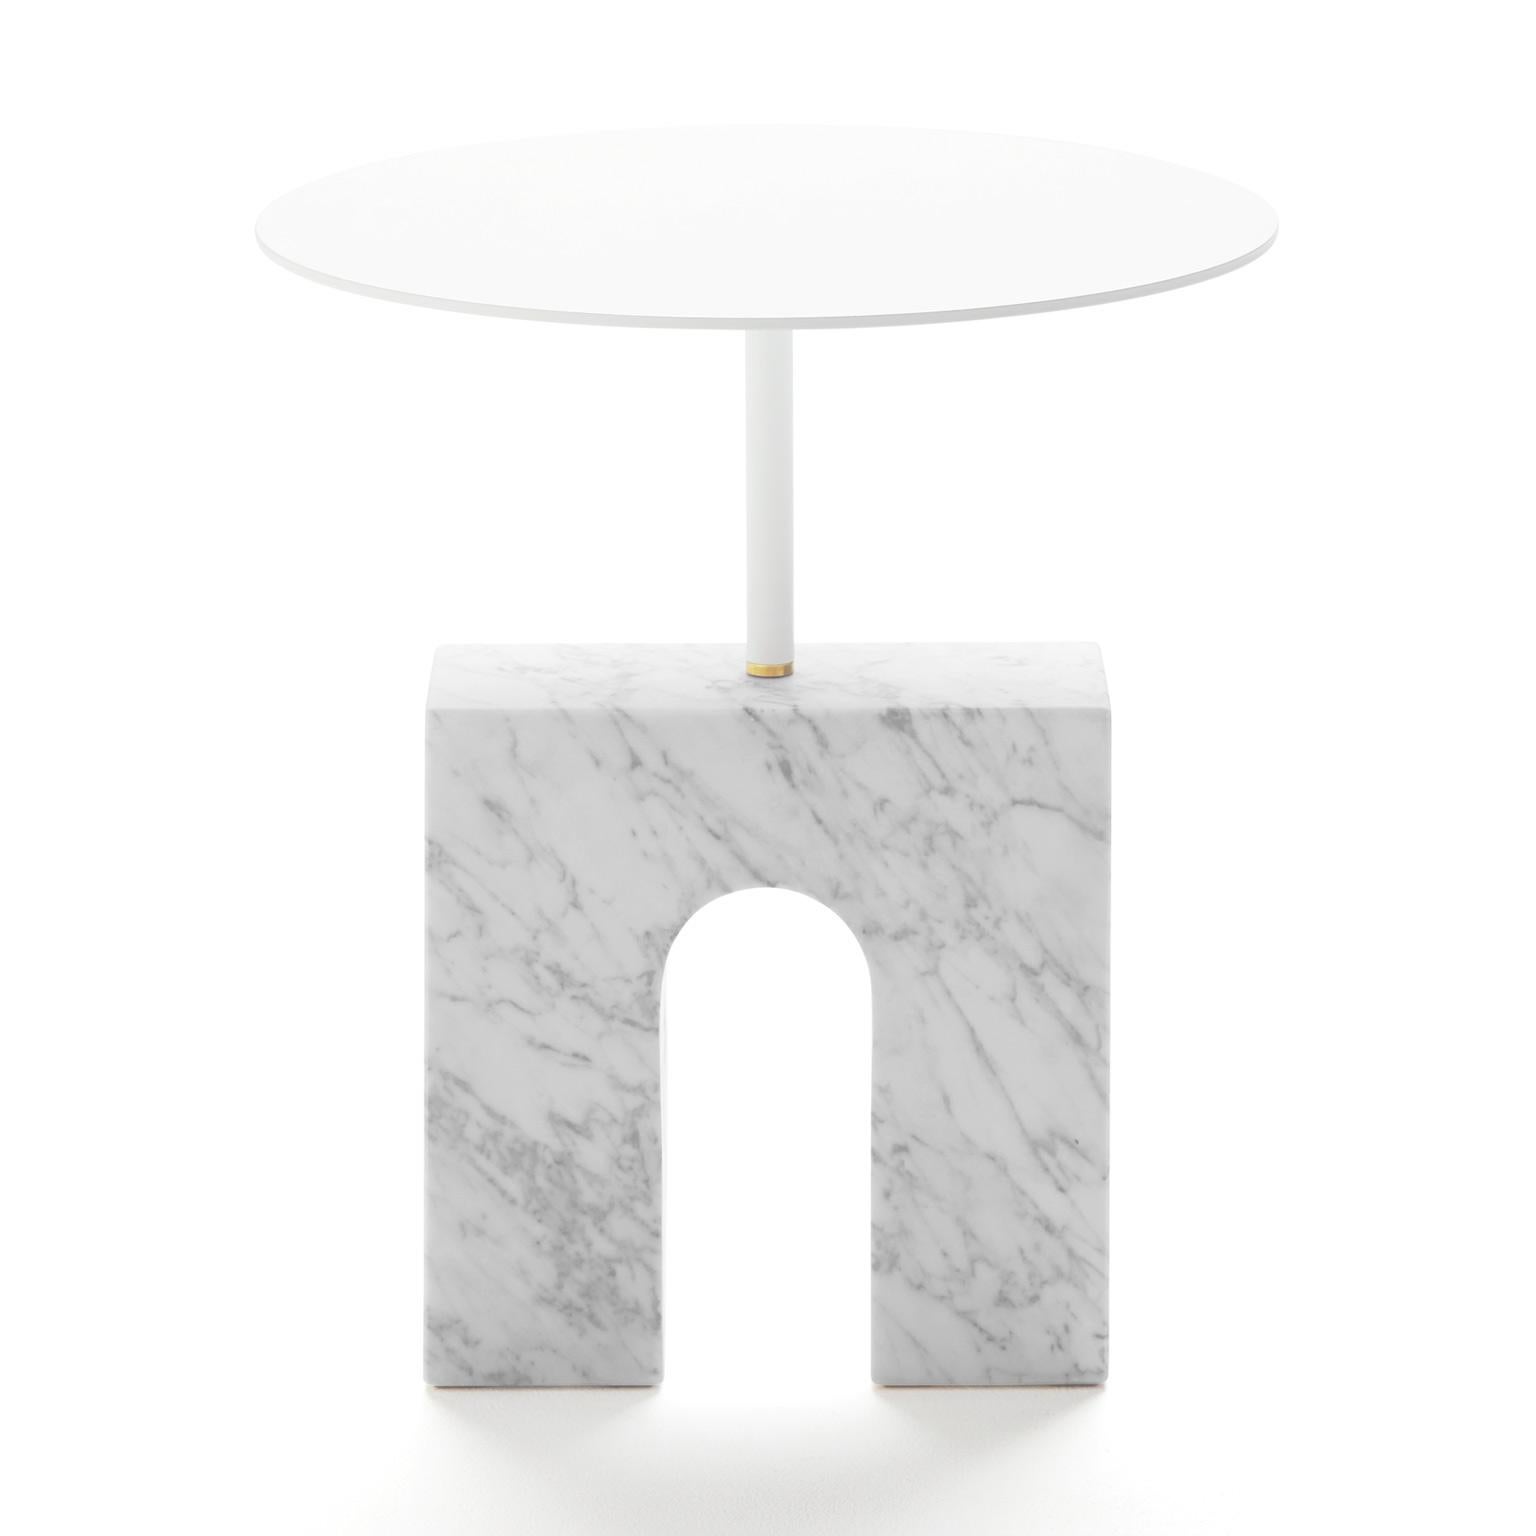 La table d'appoint Triumph est une table d'appoint de style minimaliste composée d'une base en marbre de Carrare traité, d'un plateau de forme ronde en aluminium laqué blanc et d'une petite pièce en laiton, comme nexus entre les deux parties